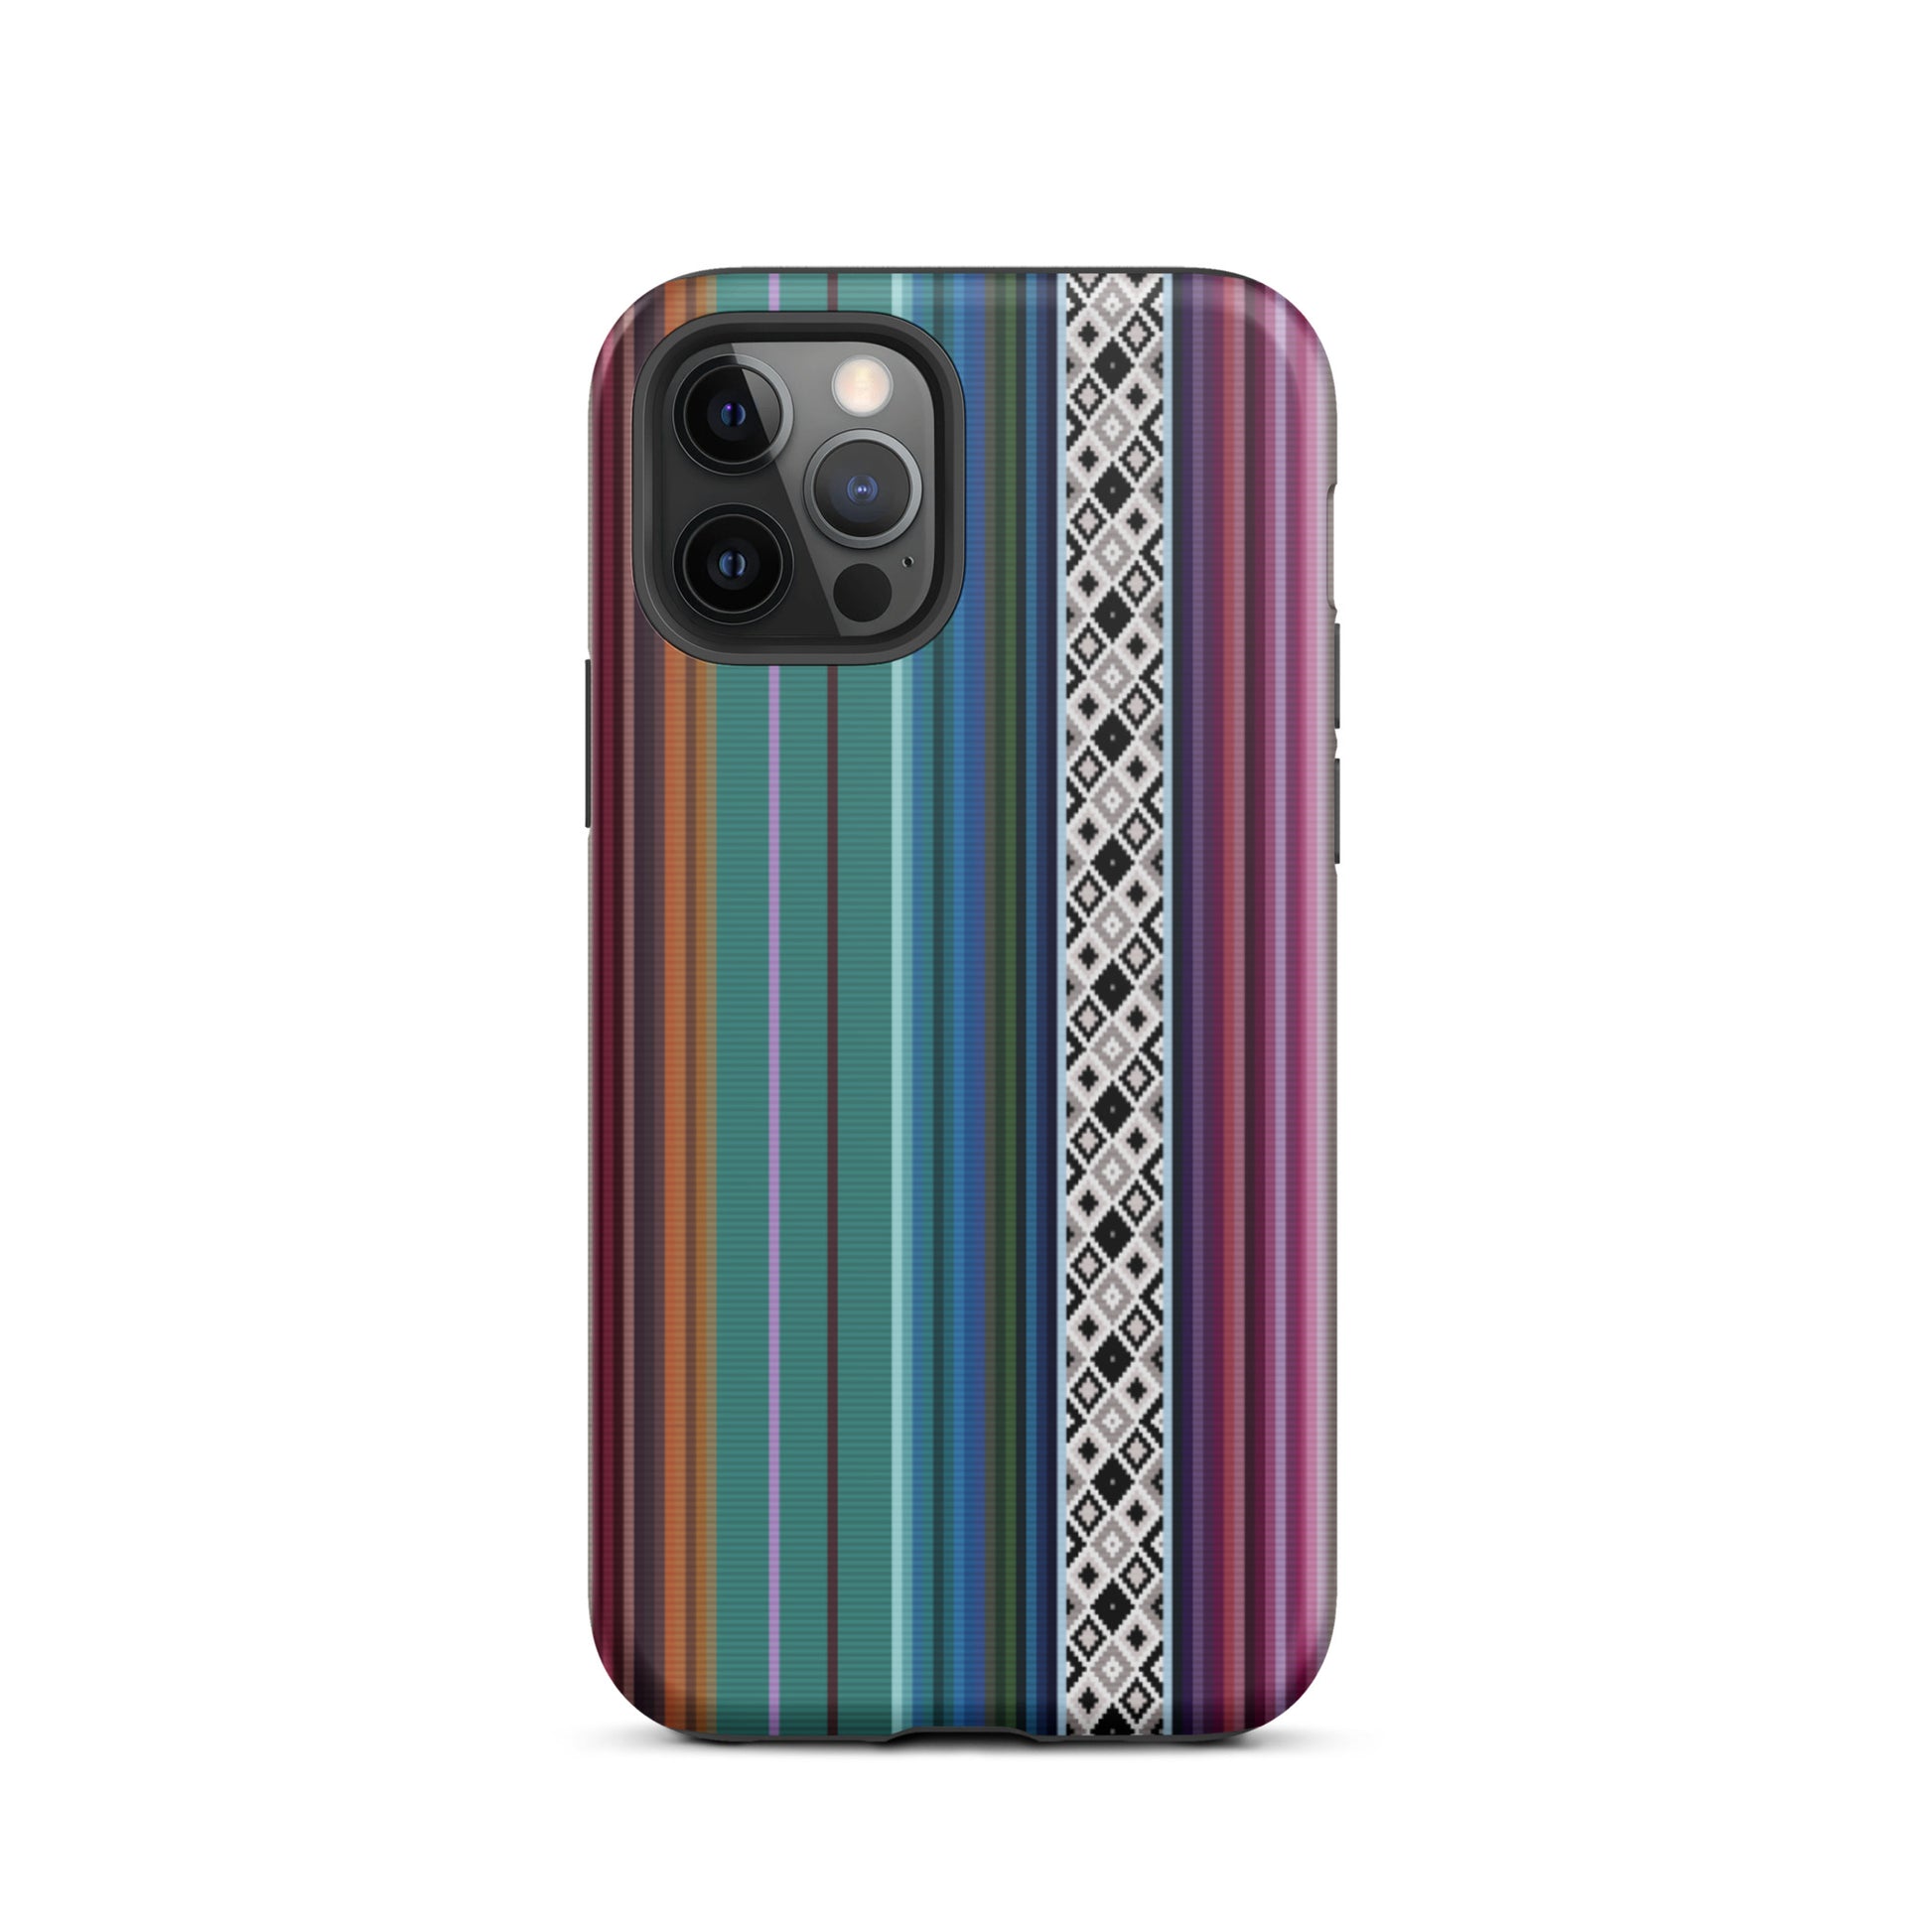 Mexican Aztec Tough iPhone 12 Pro case